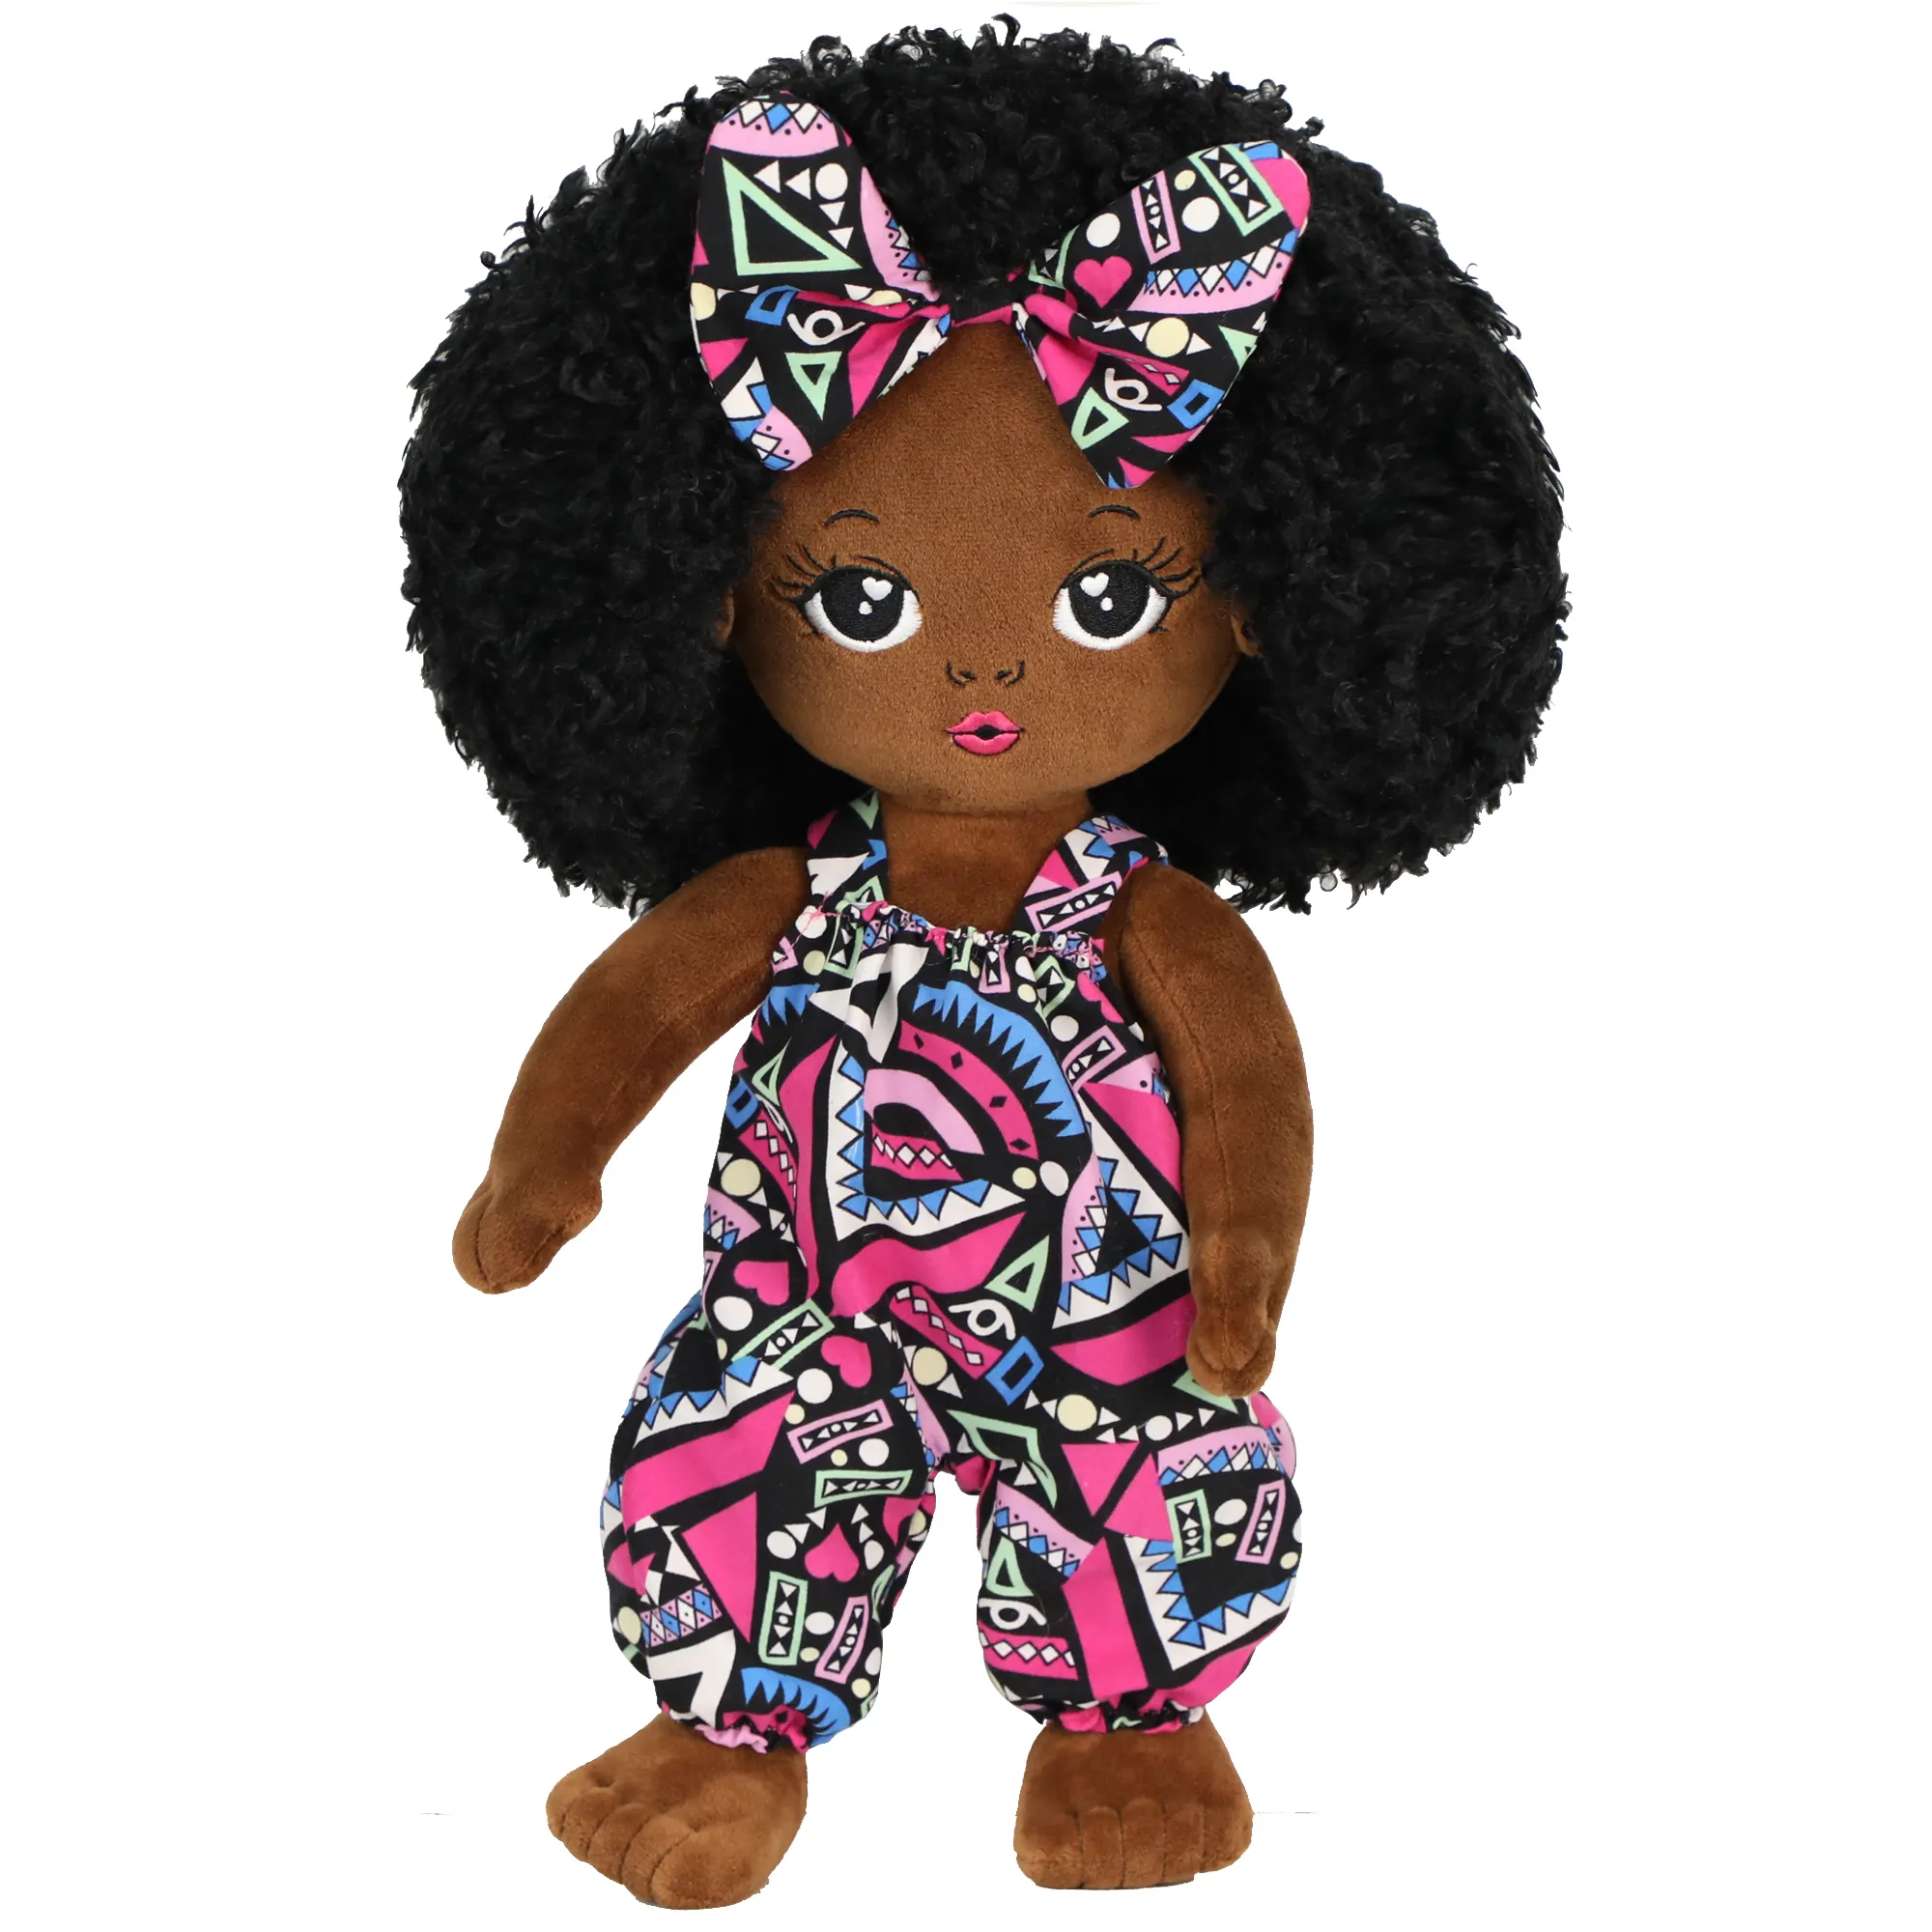 19inch African Girl Cloth Rag Doll Dress Up Cute Fashion Stuffed Soft Plush Baby Plush Black Doll